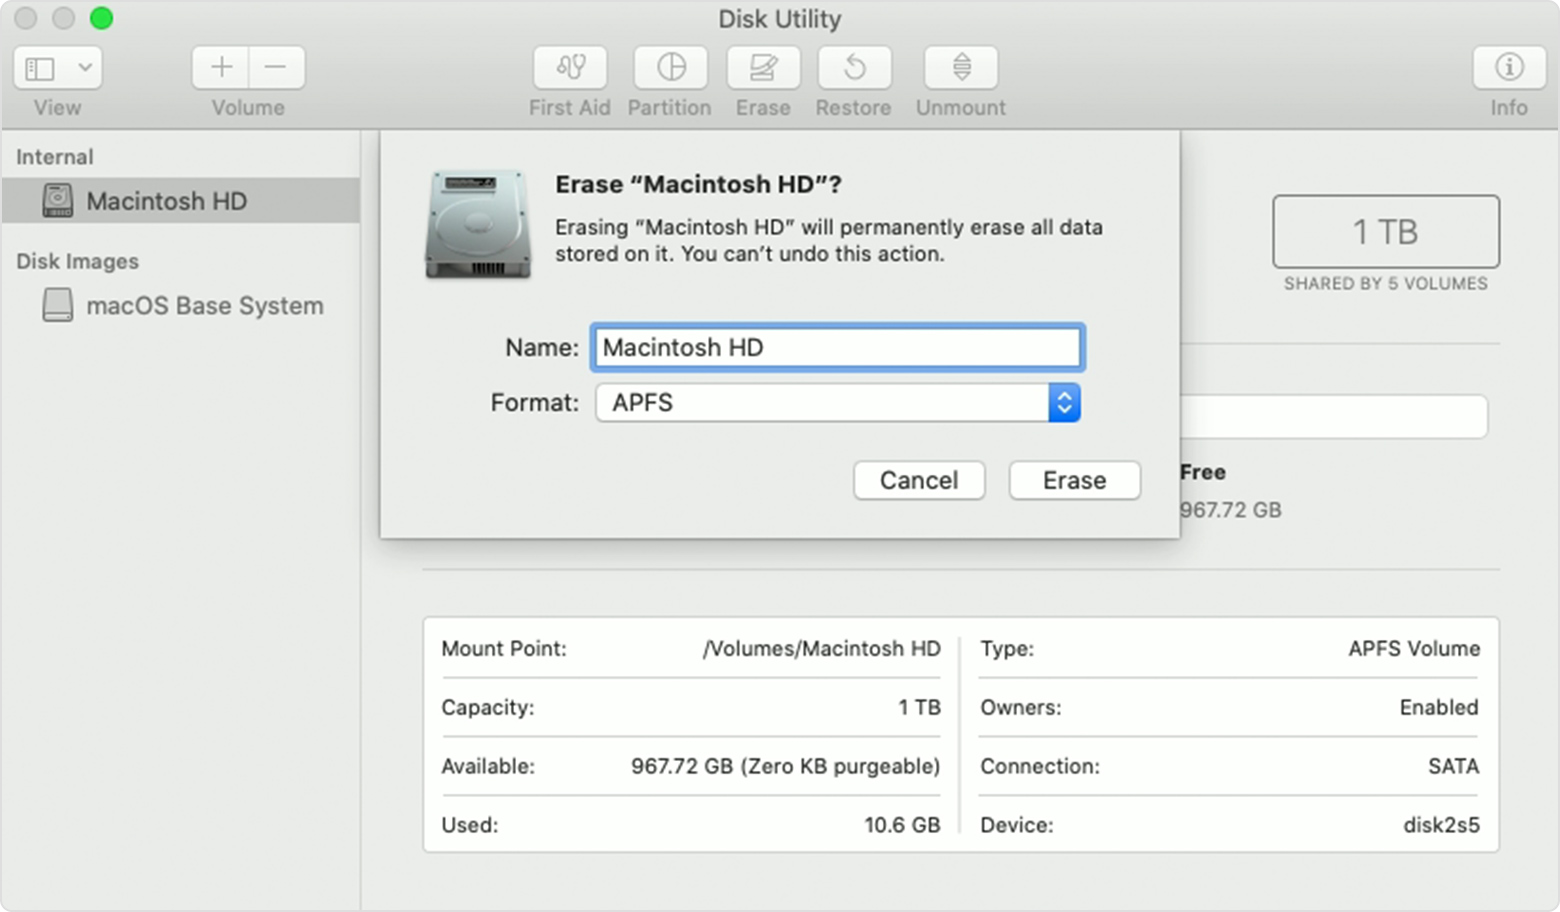 Erasing Macintosh HD in Disk Utility